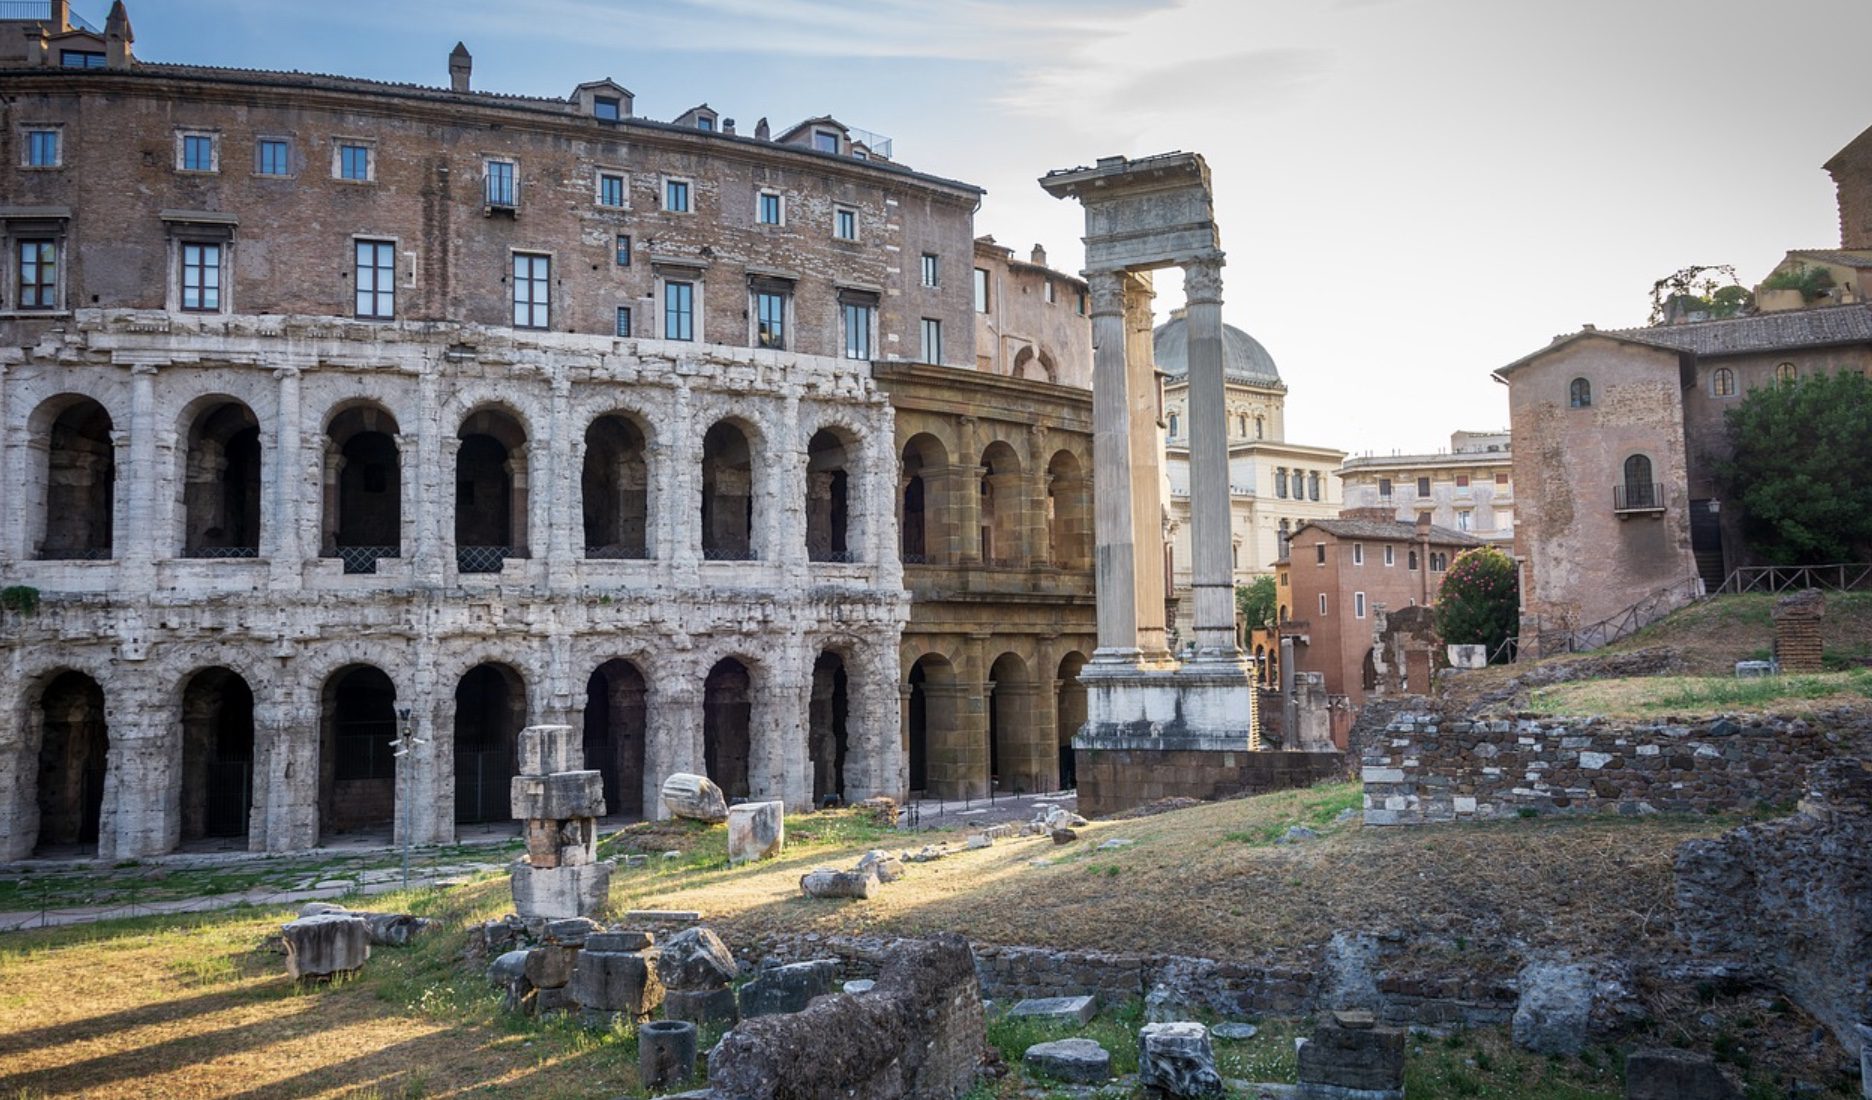 Visiter le Colisée sans faire la queue : c’est tout à fait possible grâce à nos astuces !